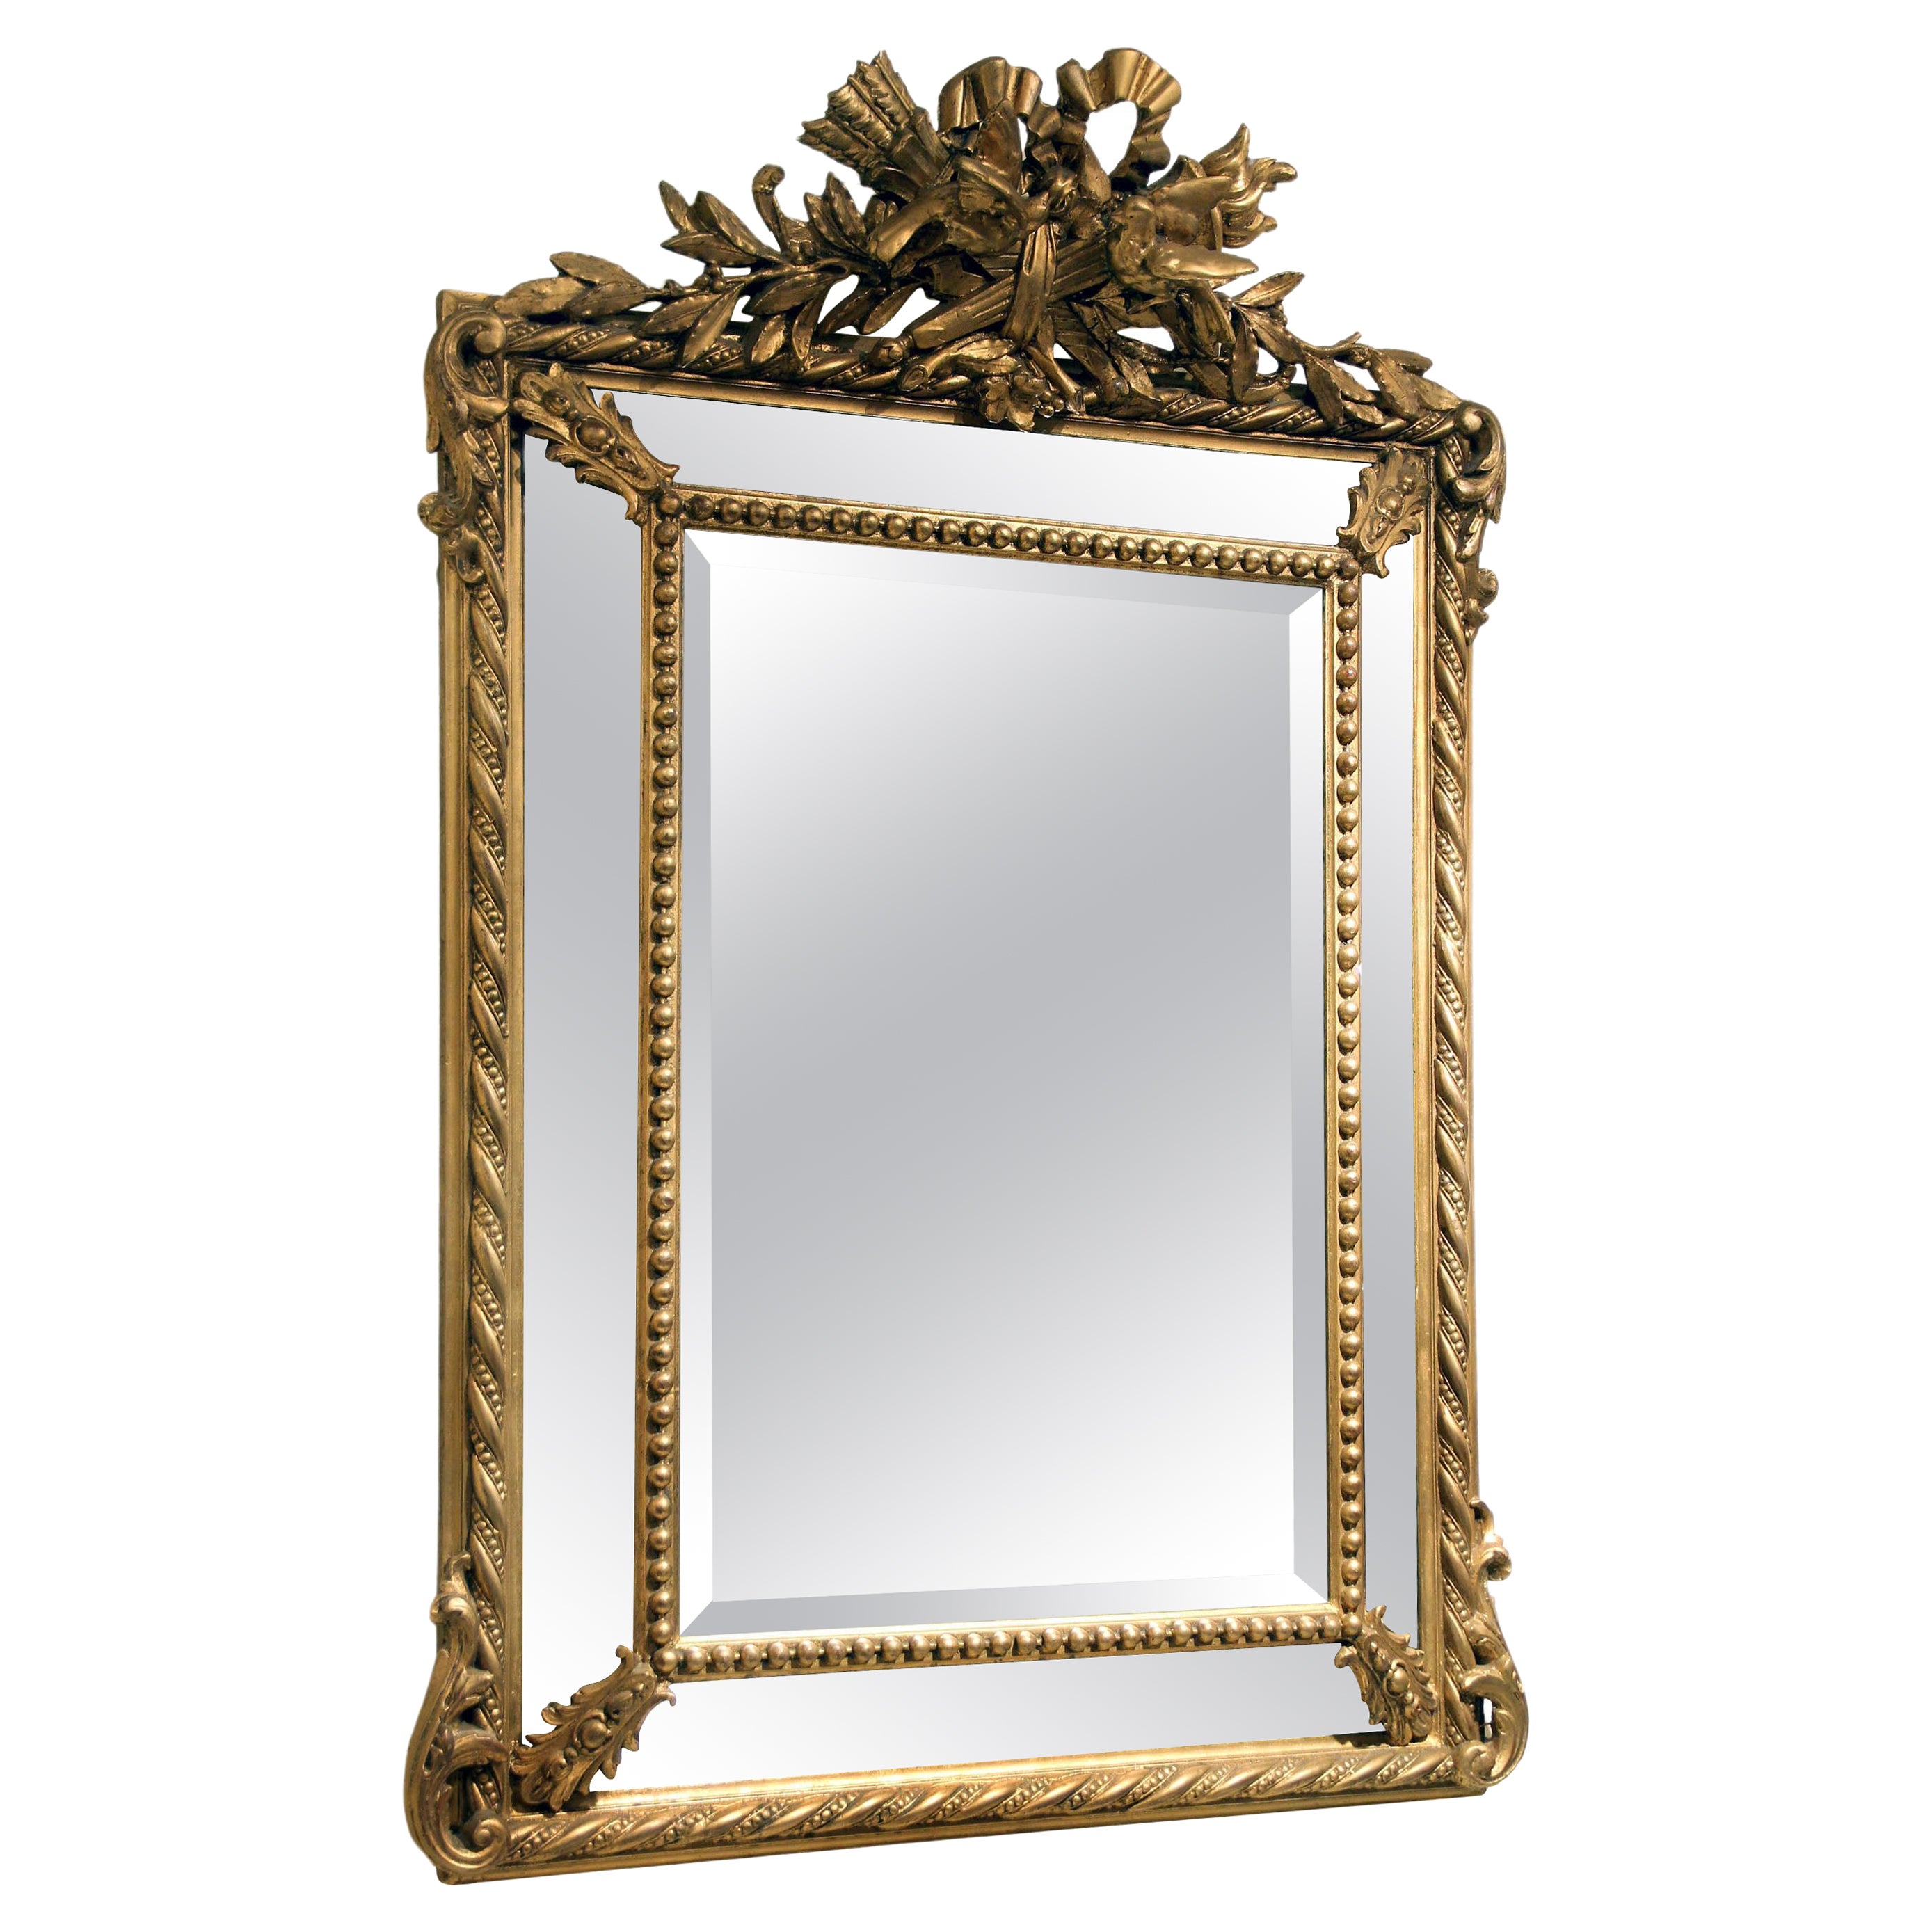 Schöner handgeschnitzter Spiegel aus vergoldetem Holz aus dem späten 19. Jahrhundert